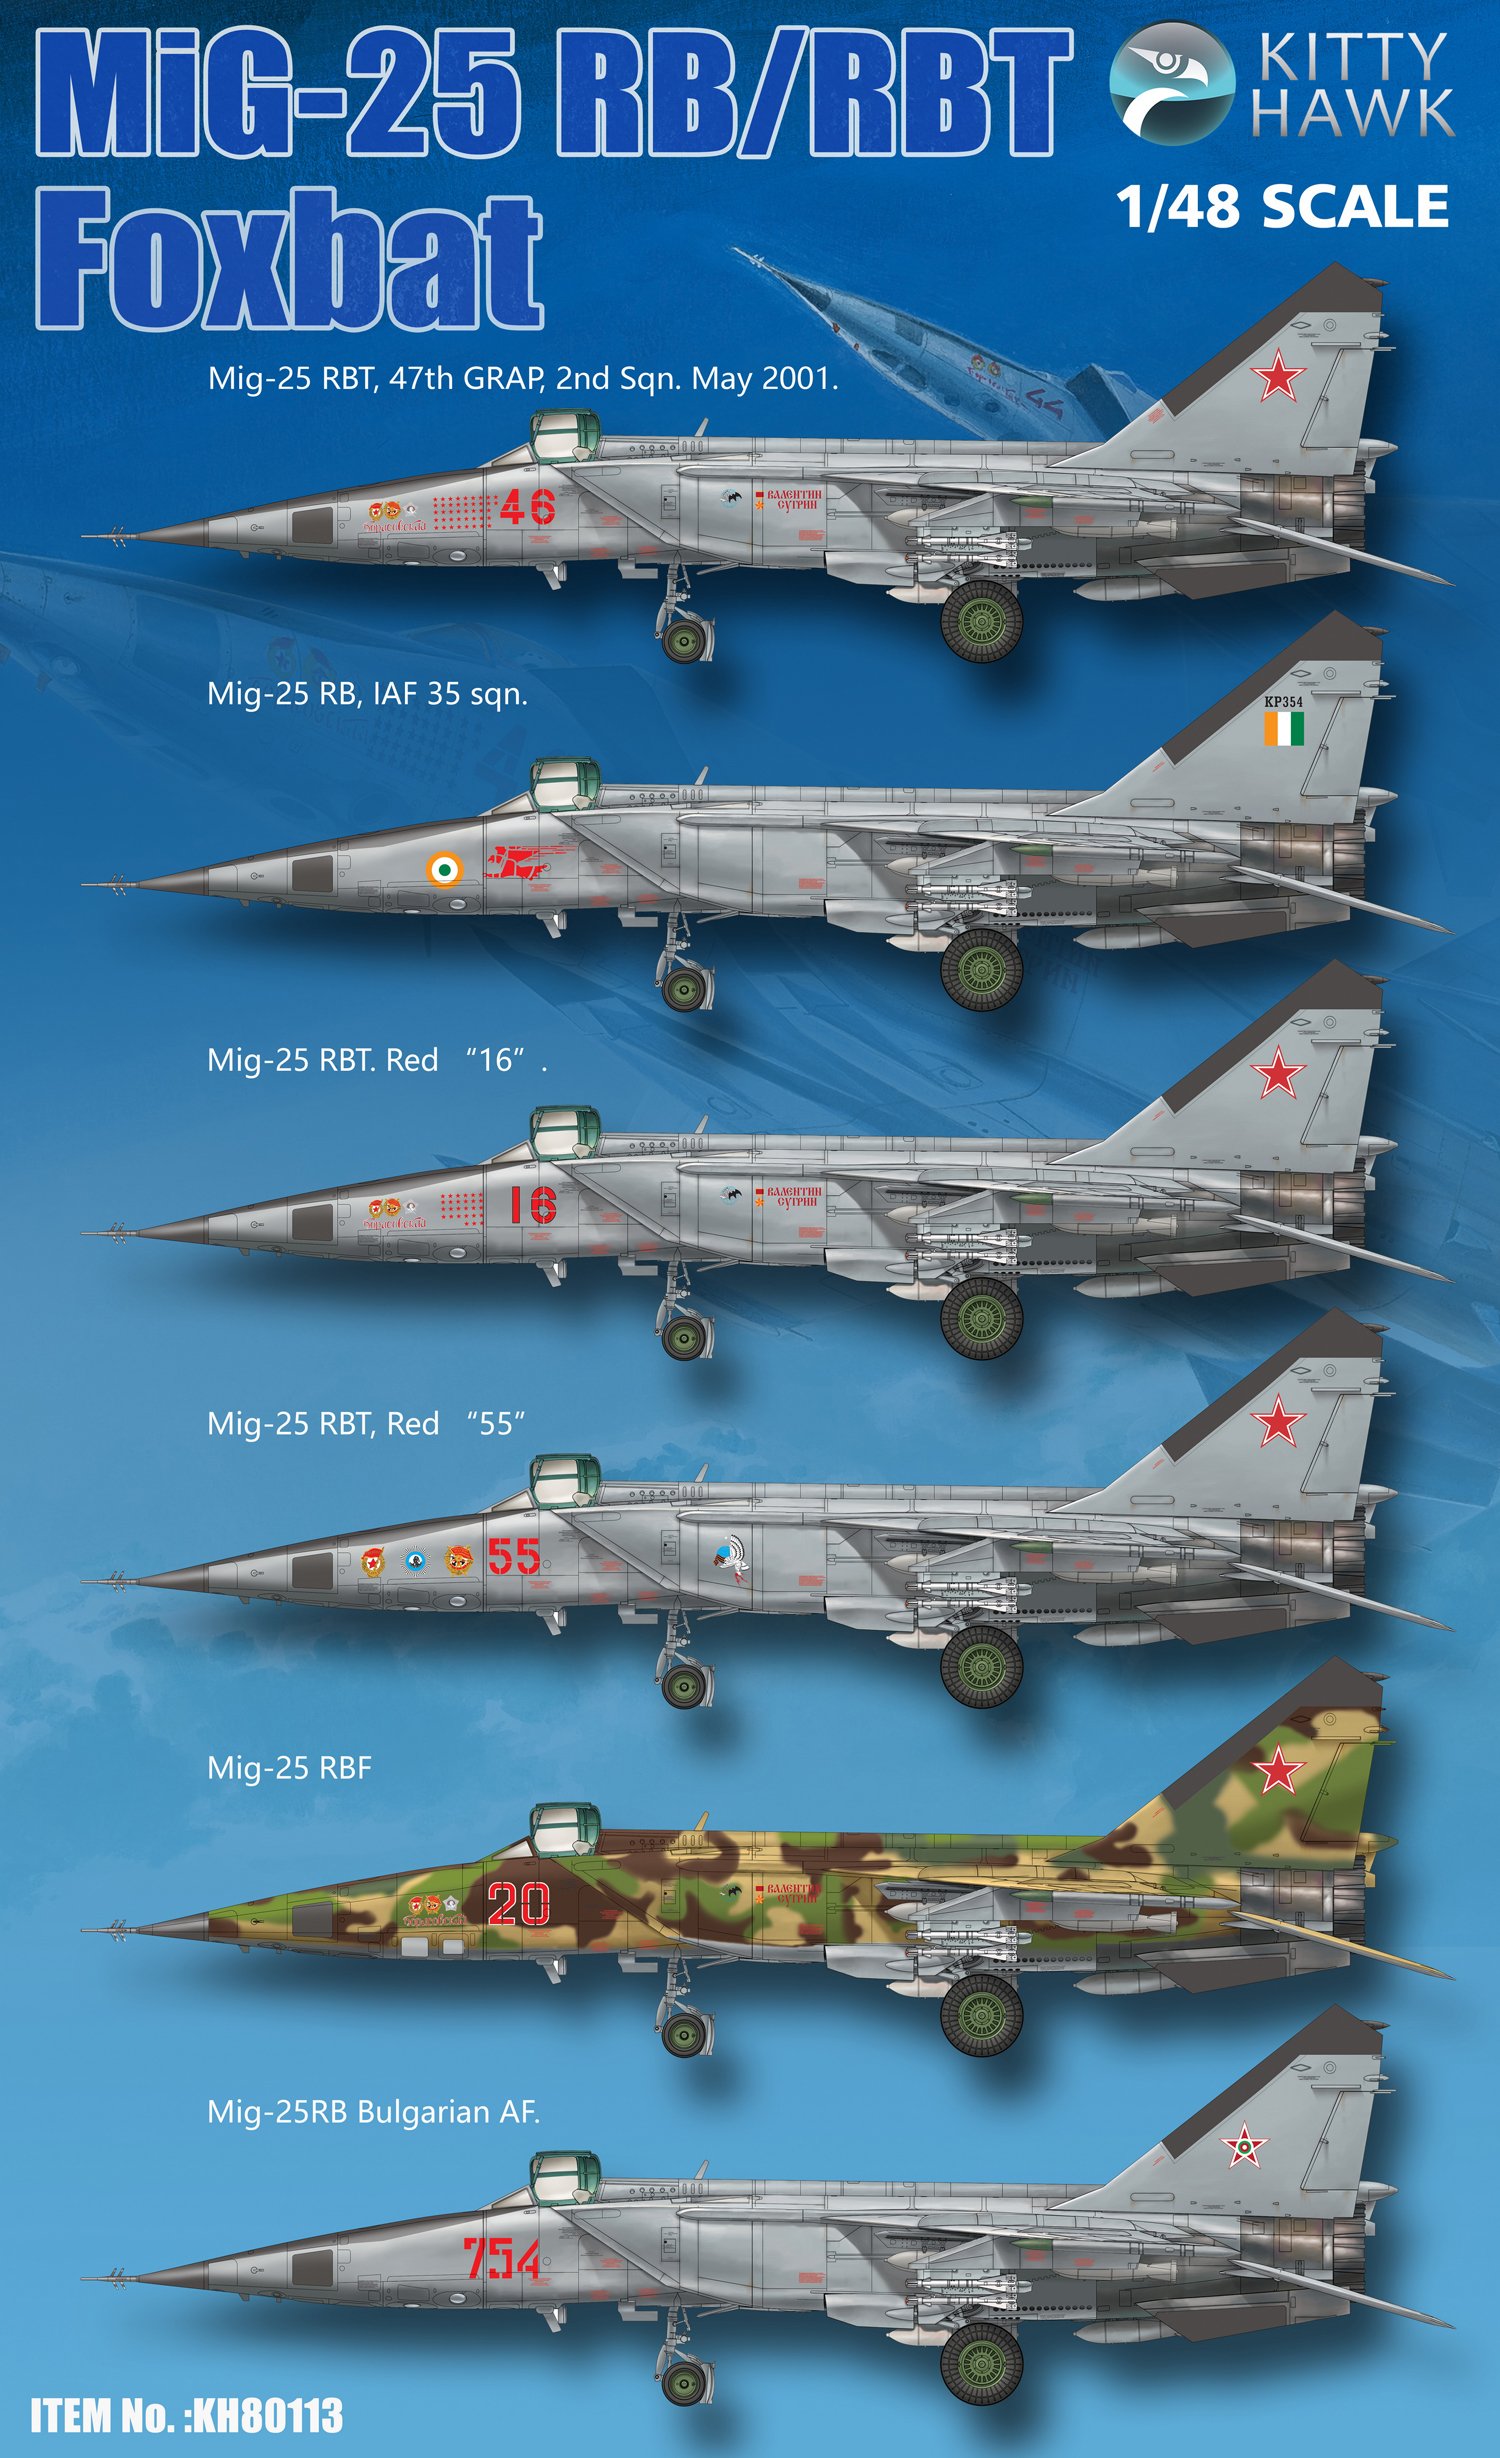 1/48 MiG-25RB/RBS "Foxbat" - Click Image to Close